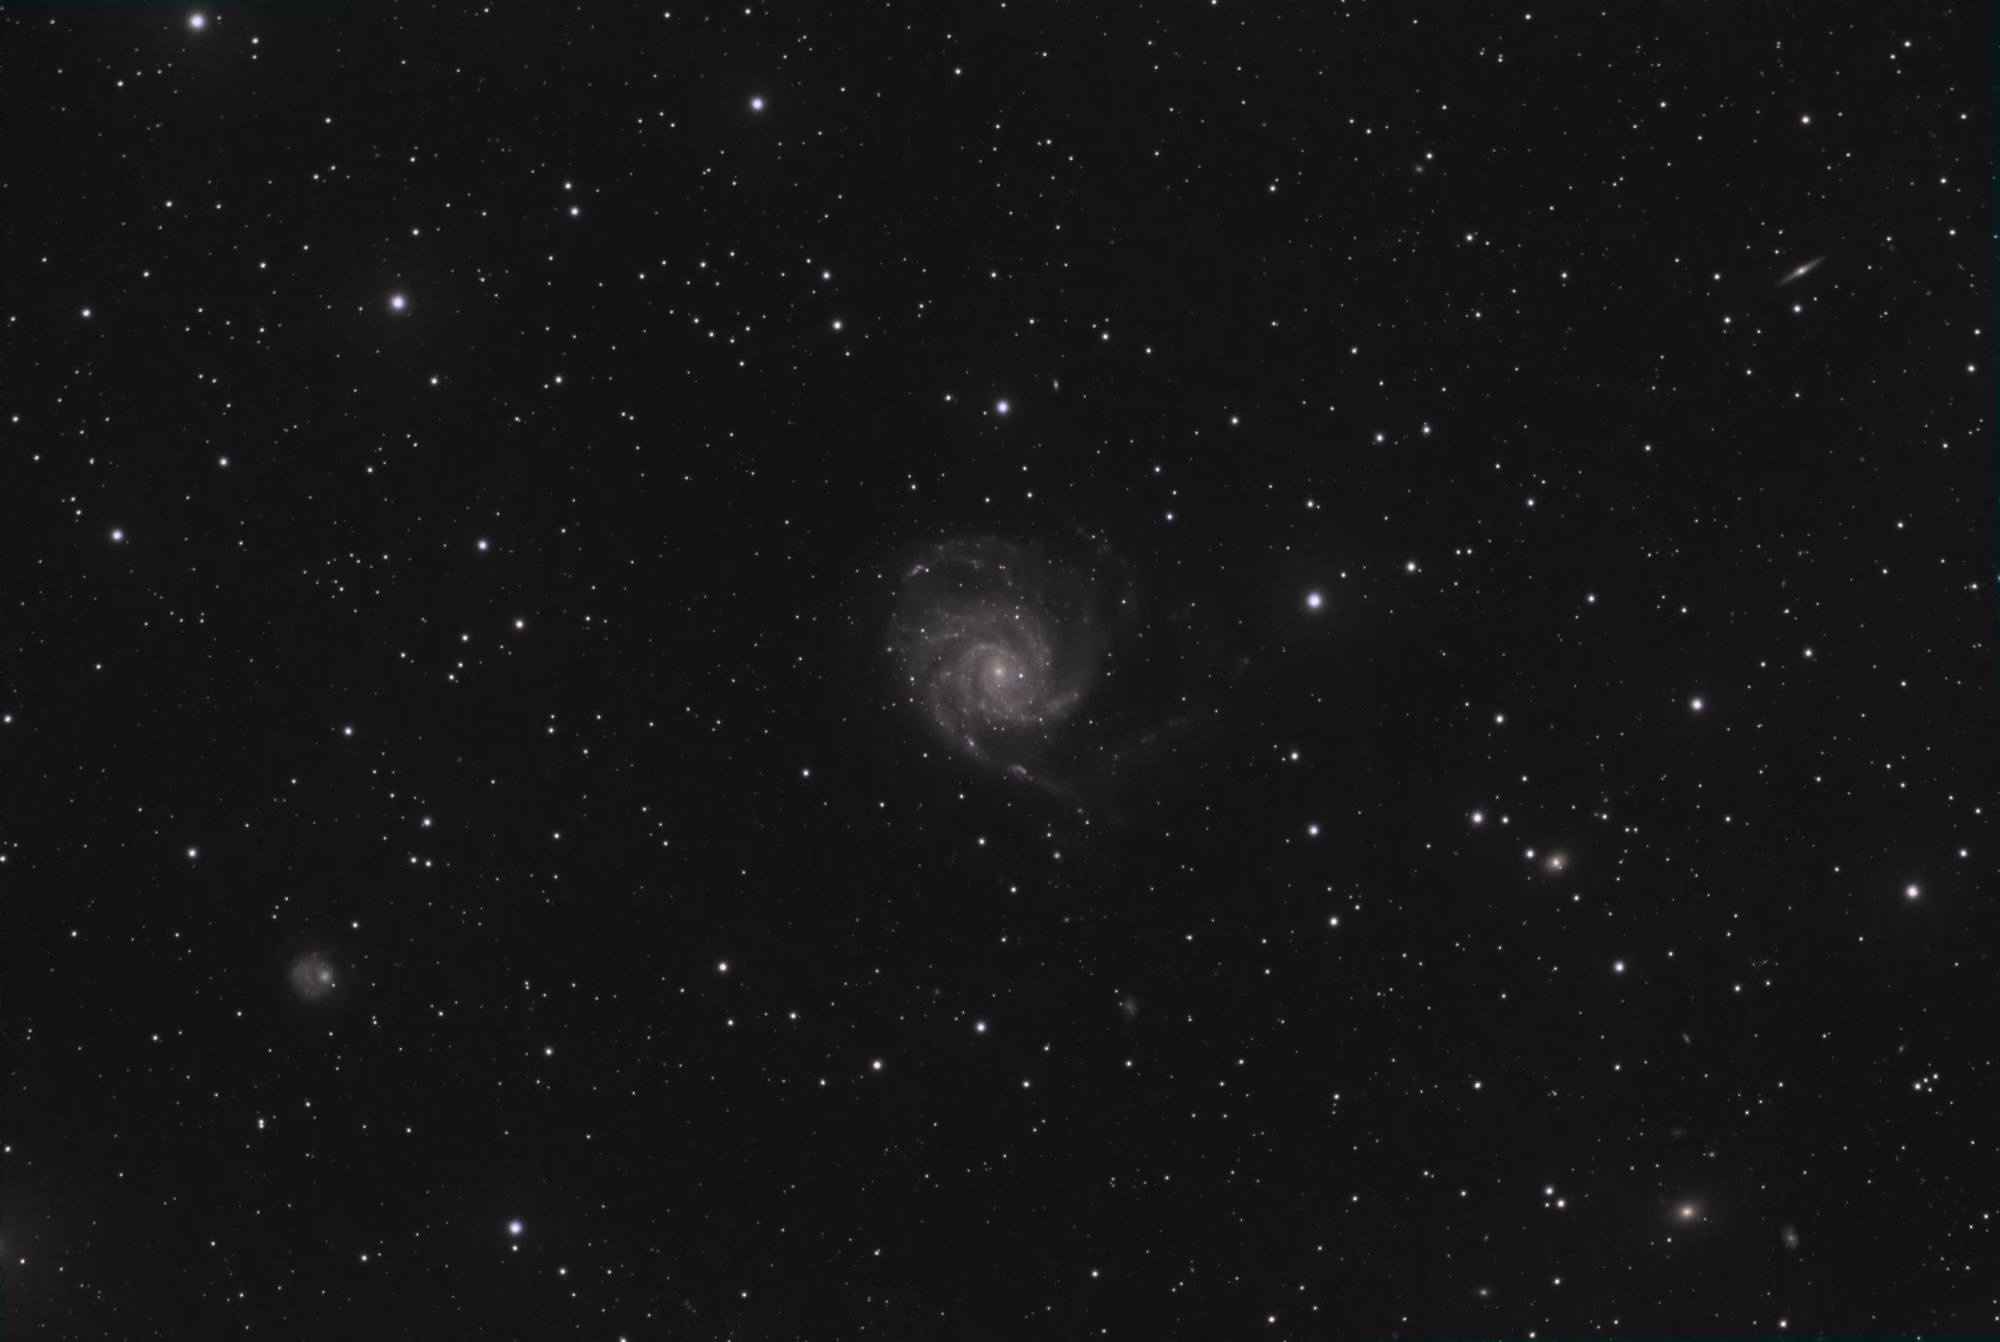 M101_olivier.thumb.jpg.c4ca30f24e1cbf52d41163797b53f3a0.jpg